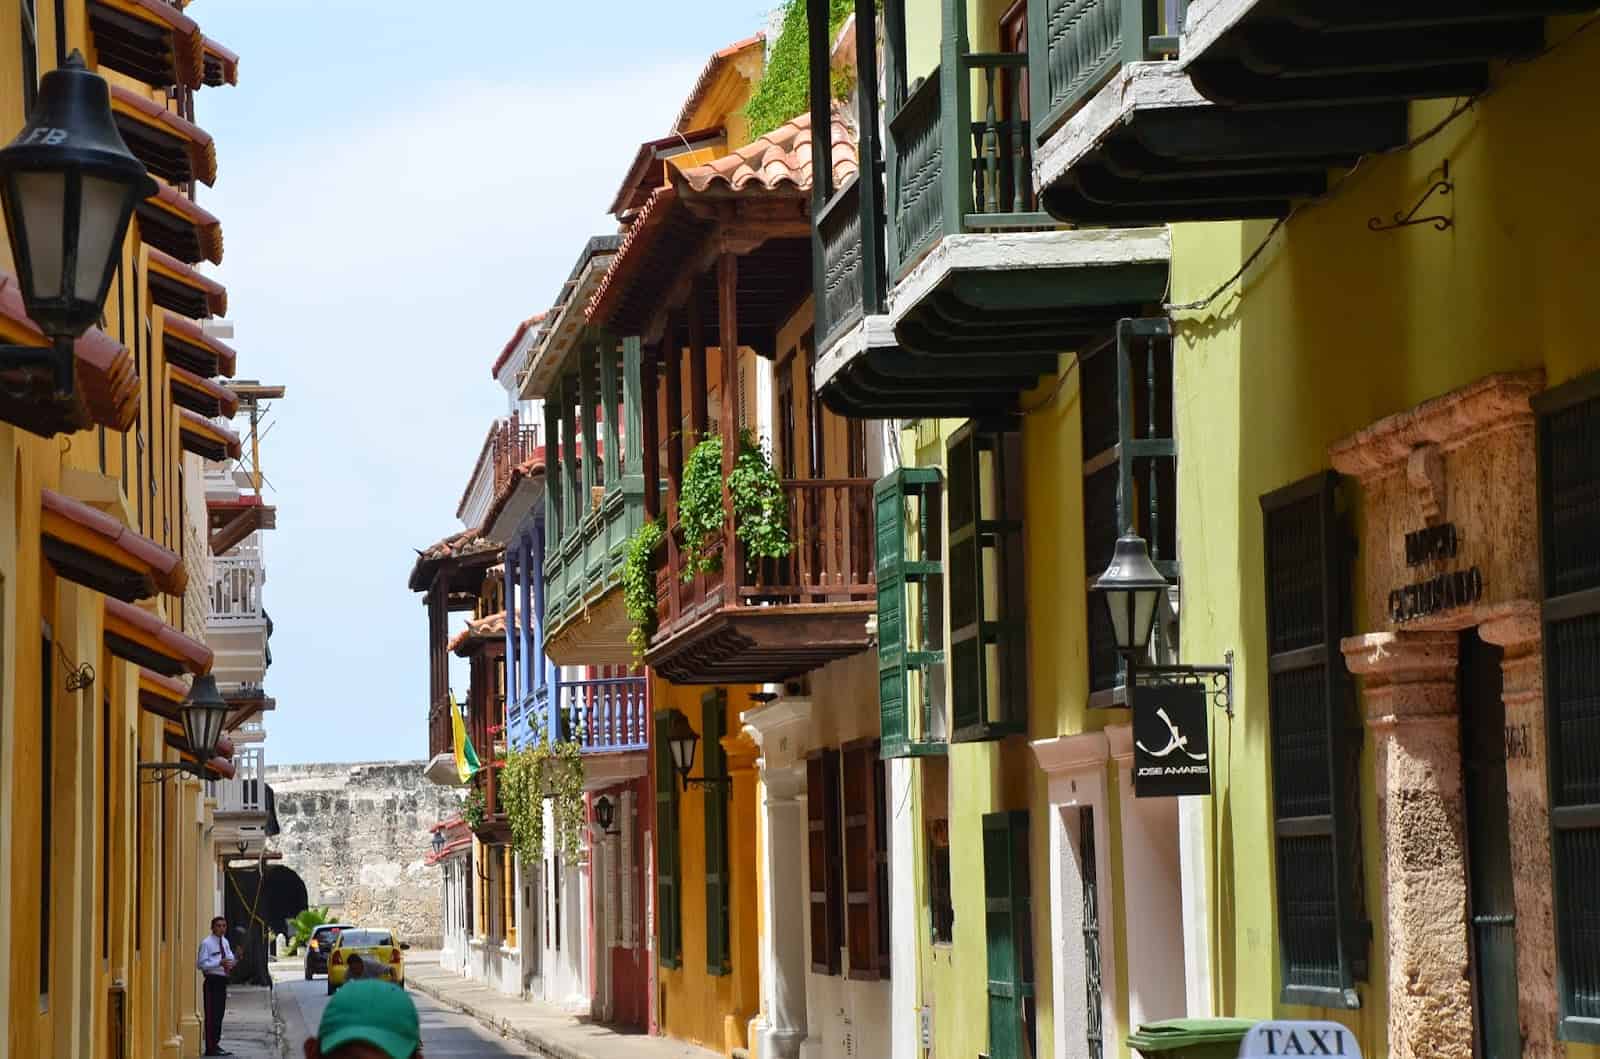 Calle de la Factoría in Old Town, Cartagena, Colombia